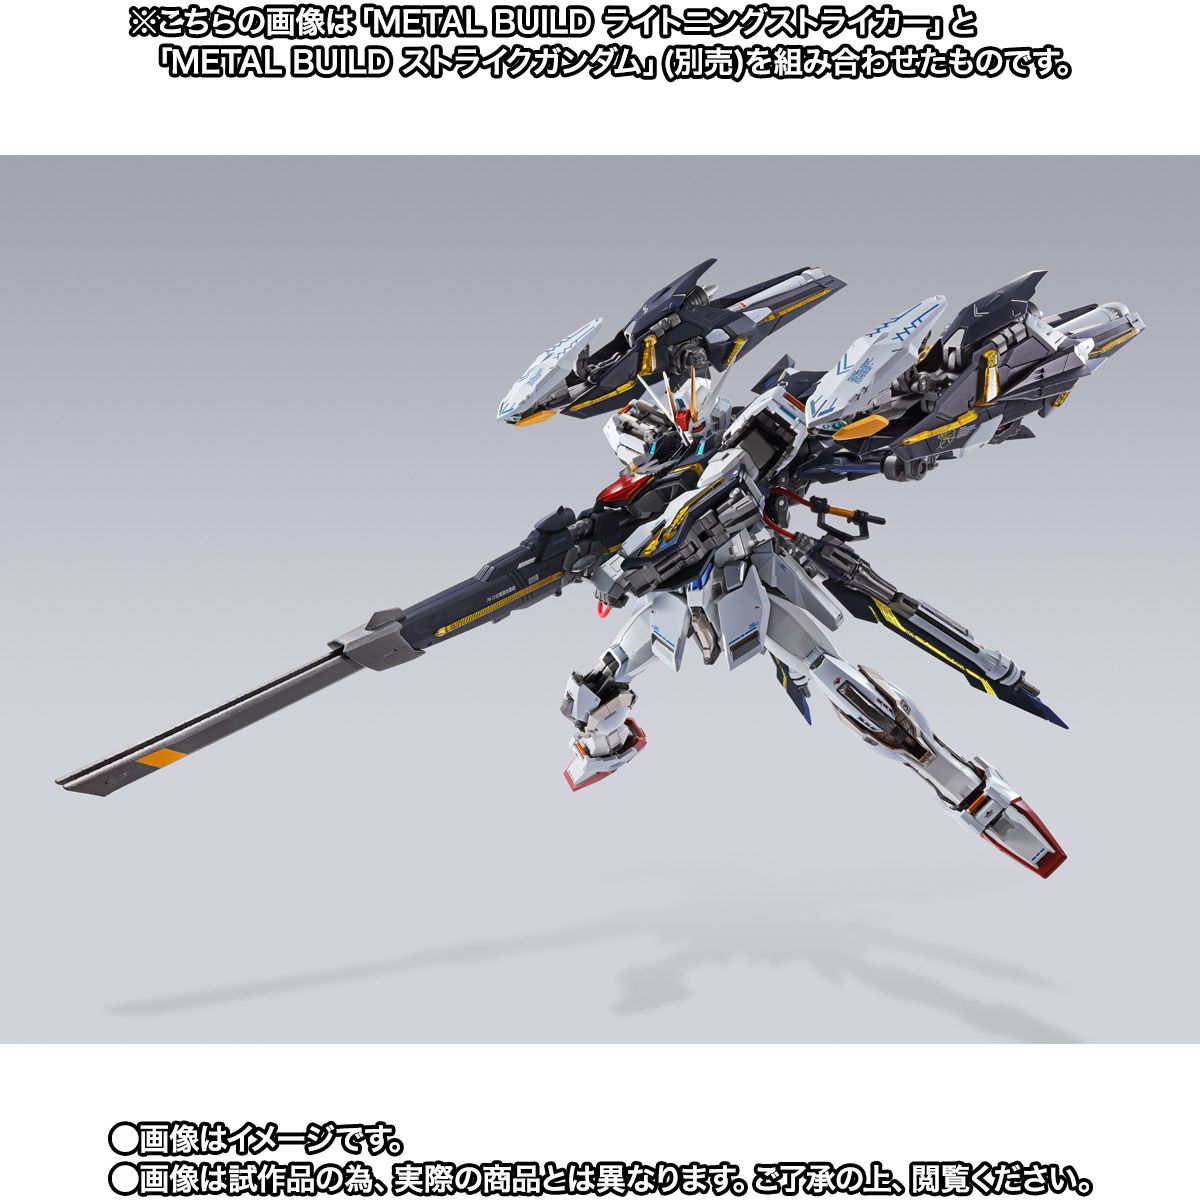 【限定販売】METAL BUILD『ライトニングストライカー』機動戦士ガンダムSEED 可動フィギュア-006